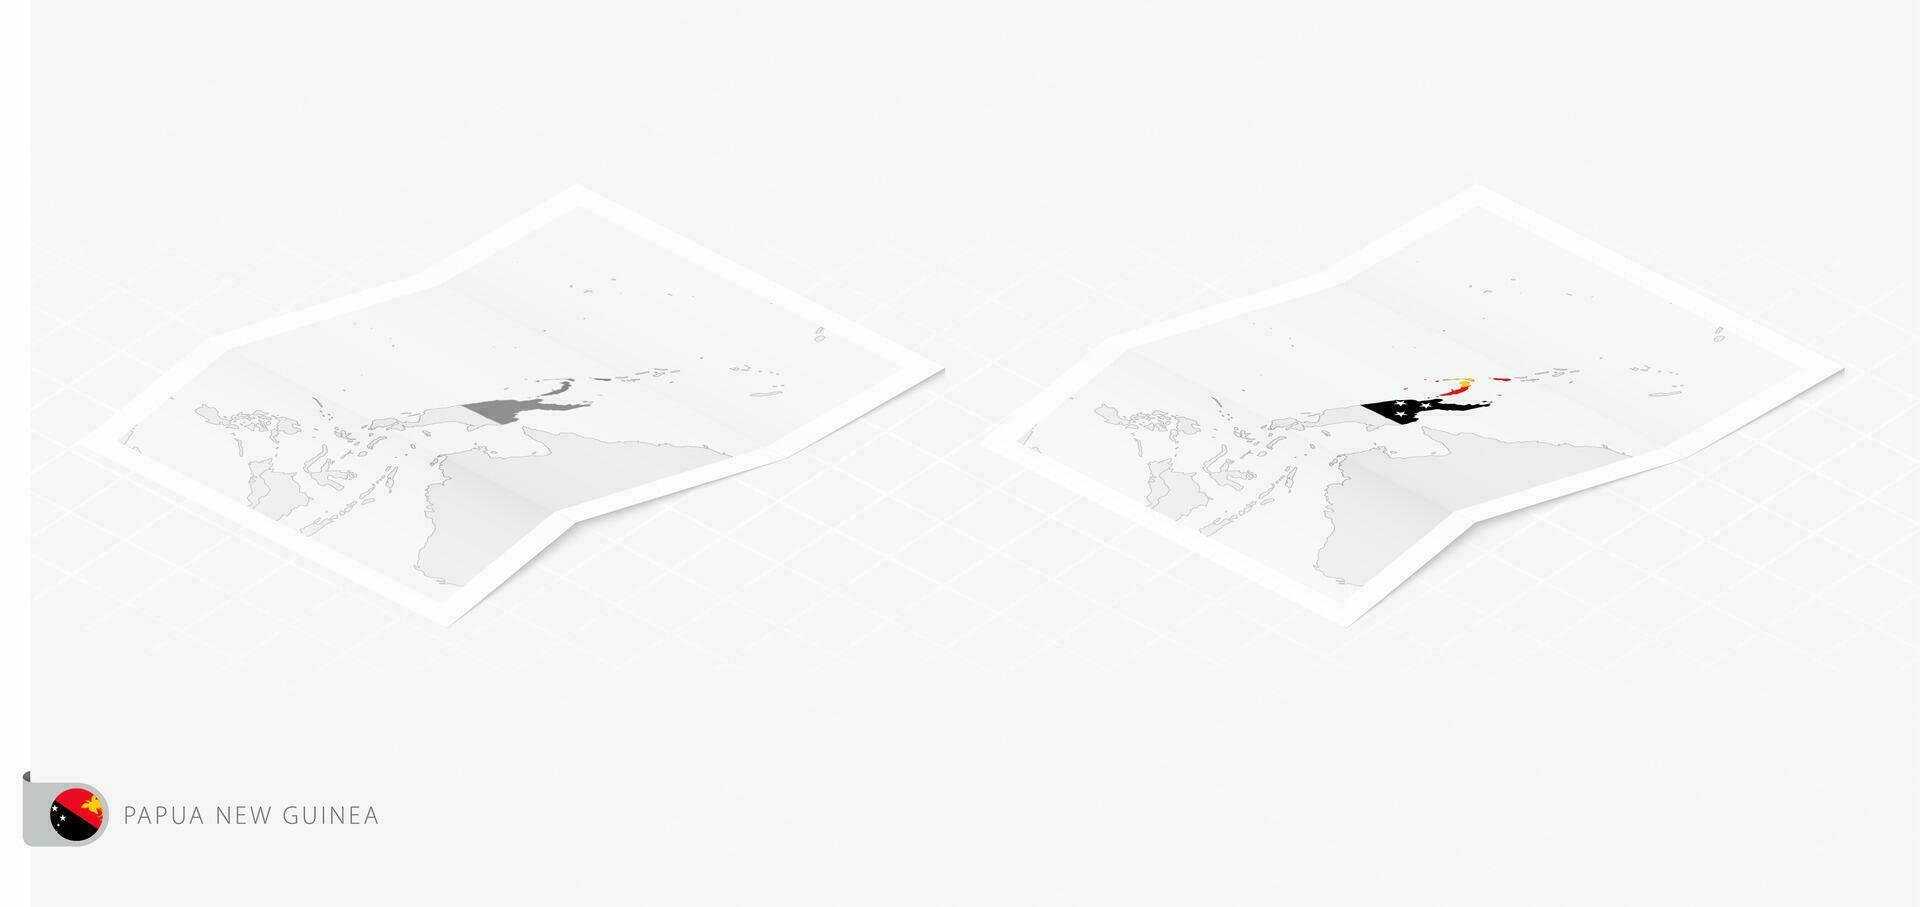 impostato di Due realistico carta geografica di papua nuovo Guinea con ombra. il bandiera e carta geografica di papua nuovo Guinea nel isometrico stile. vettore